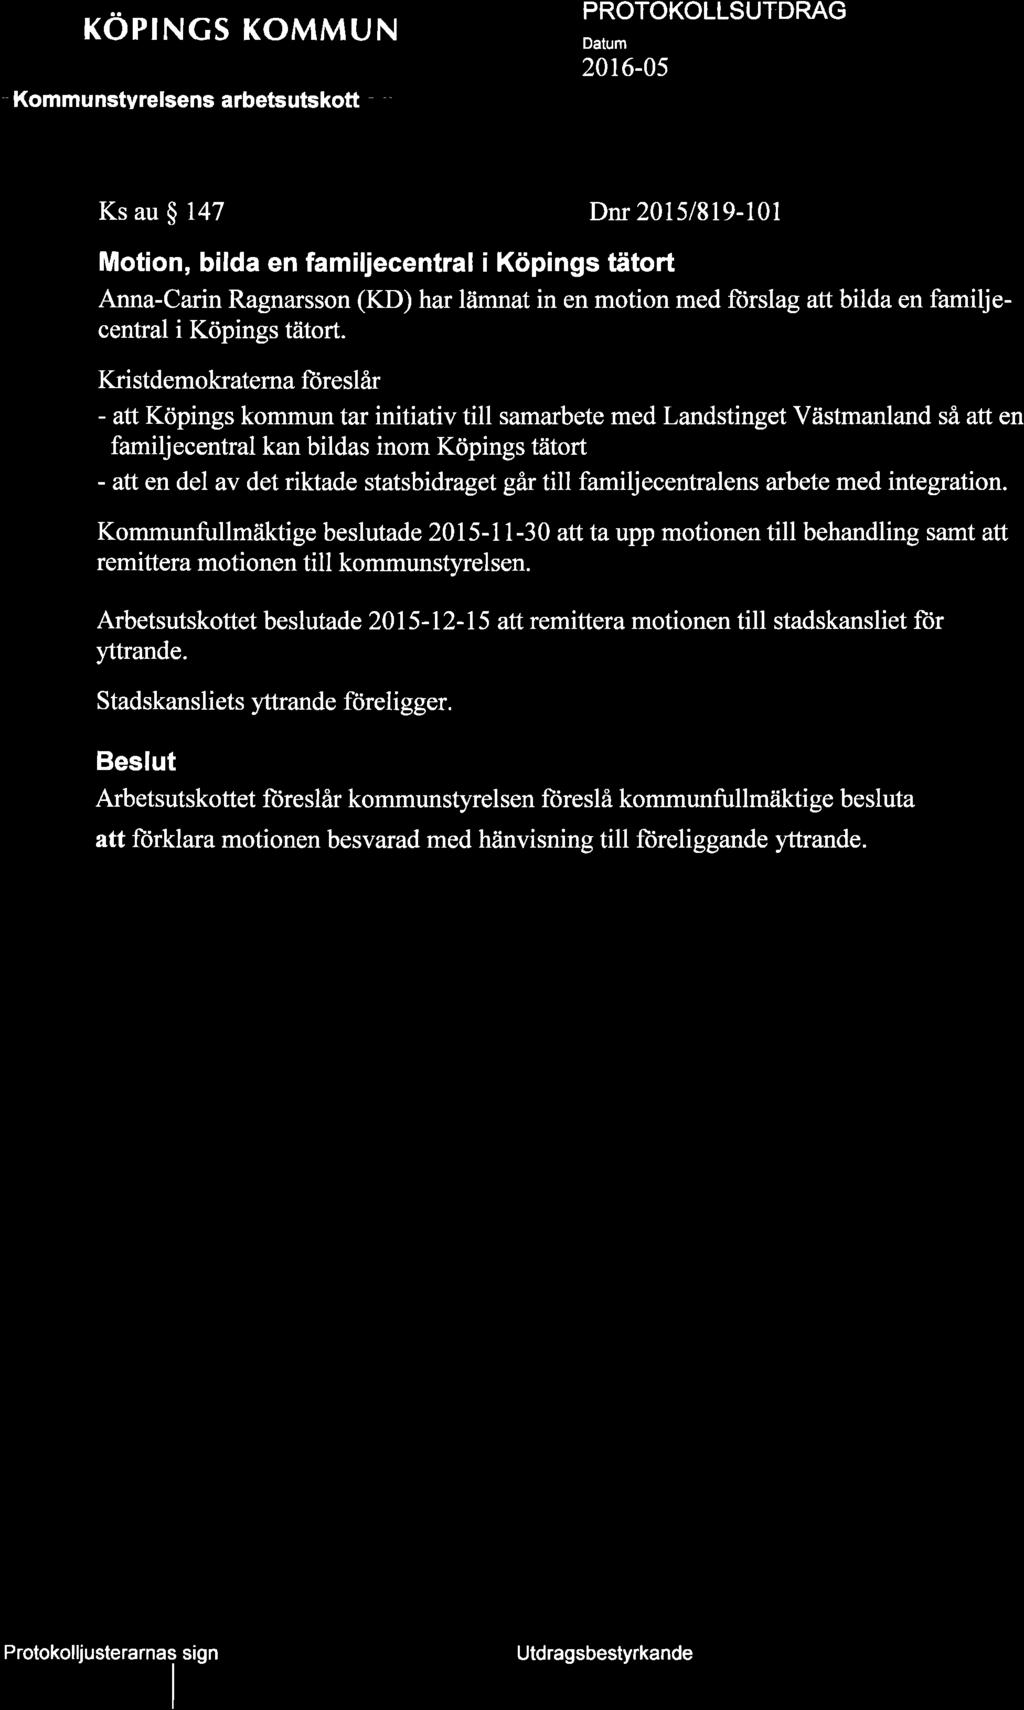 KOPNGS KOMMUN ' Kommunstyrelsens arbetsutskott - 20t6-05 p Ks au $ 147 Dnr 2015/819-101 Motion, bilda en familjecentral i Köpings tätort Anna-Carin Ragnarsson (KD) har lämnat in en motion med